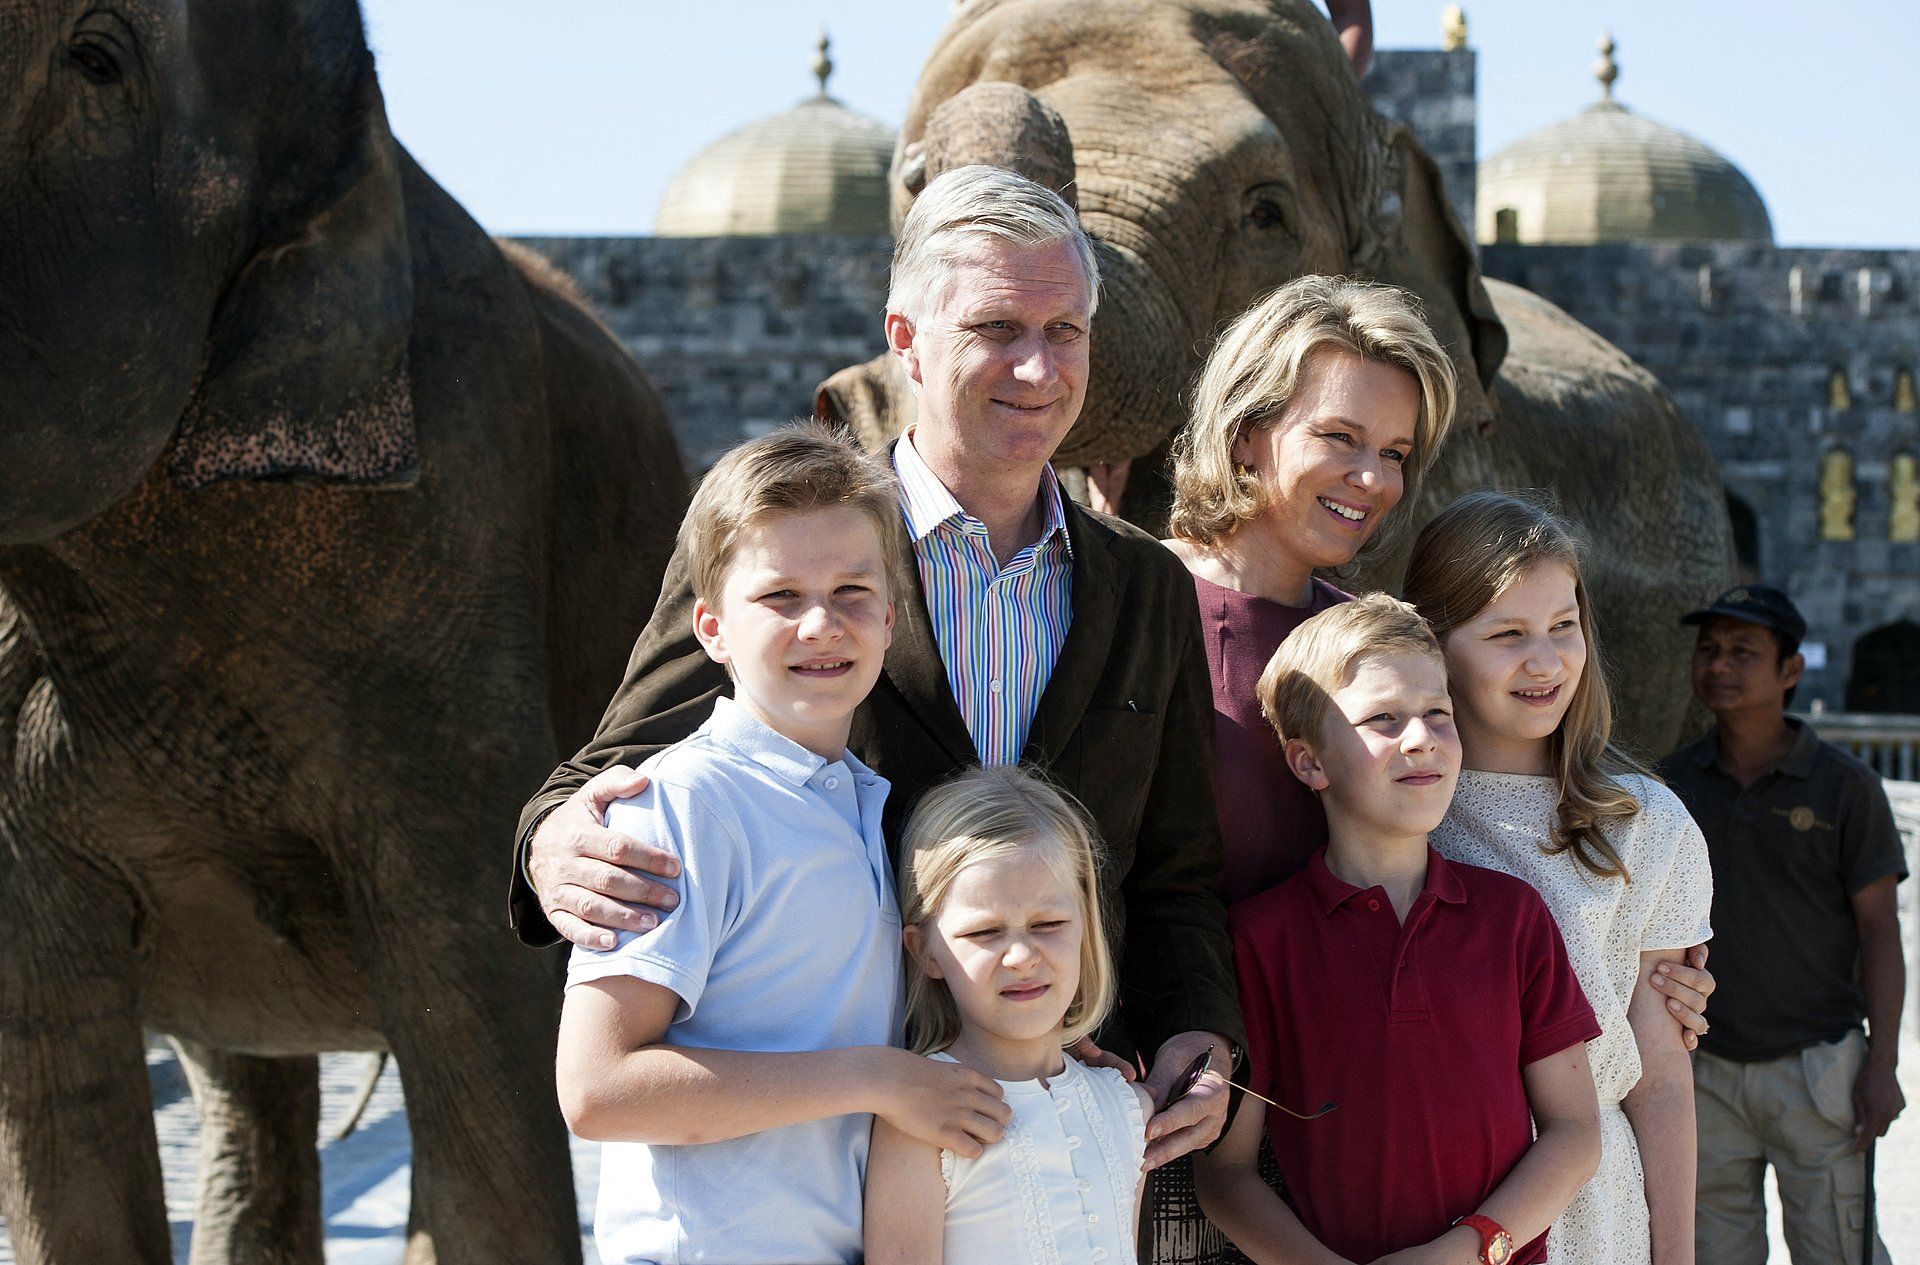 In juli 2015 poseert het koninklijk gezin met olifanten tijdens hun vakantie. De zomerse familiefoto